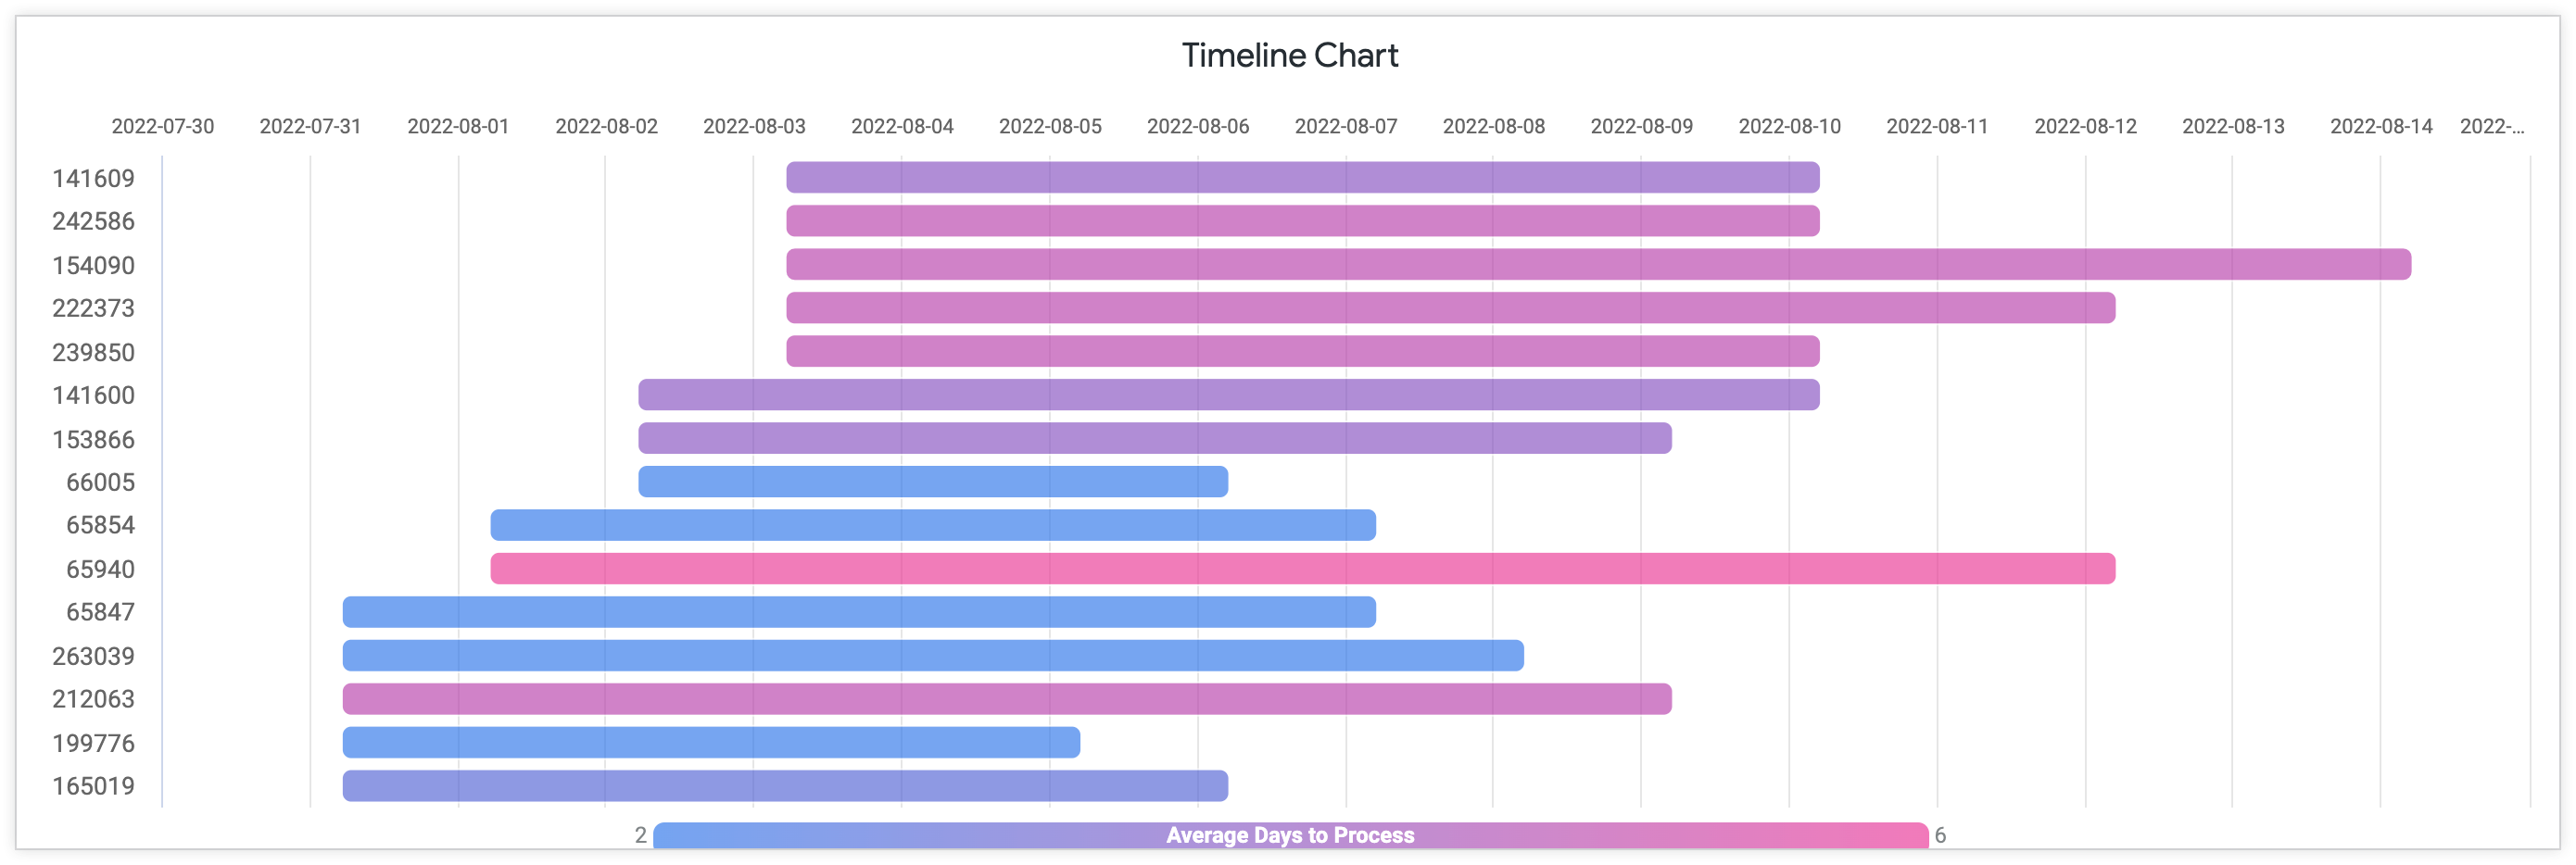 Grafico a Timeline che mostra la media dei giorni di elaborazione con l'ID ordine sull'asse y e i giorni da luglio ad agosto 2022 sull'asse x.